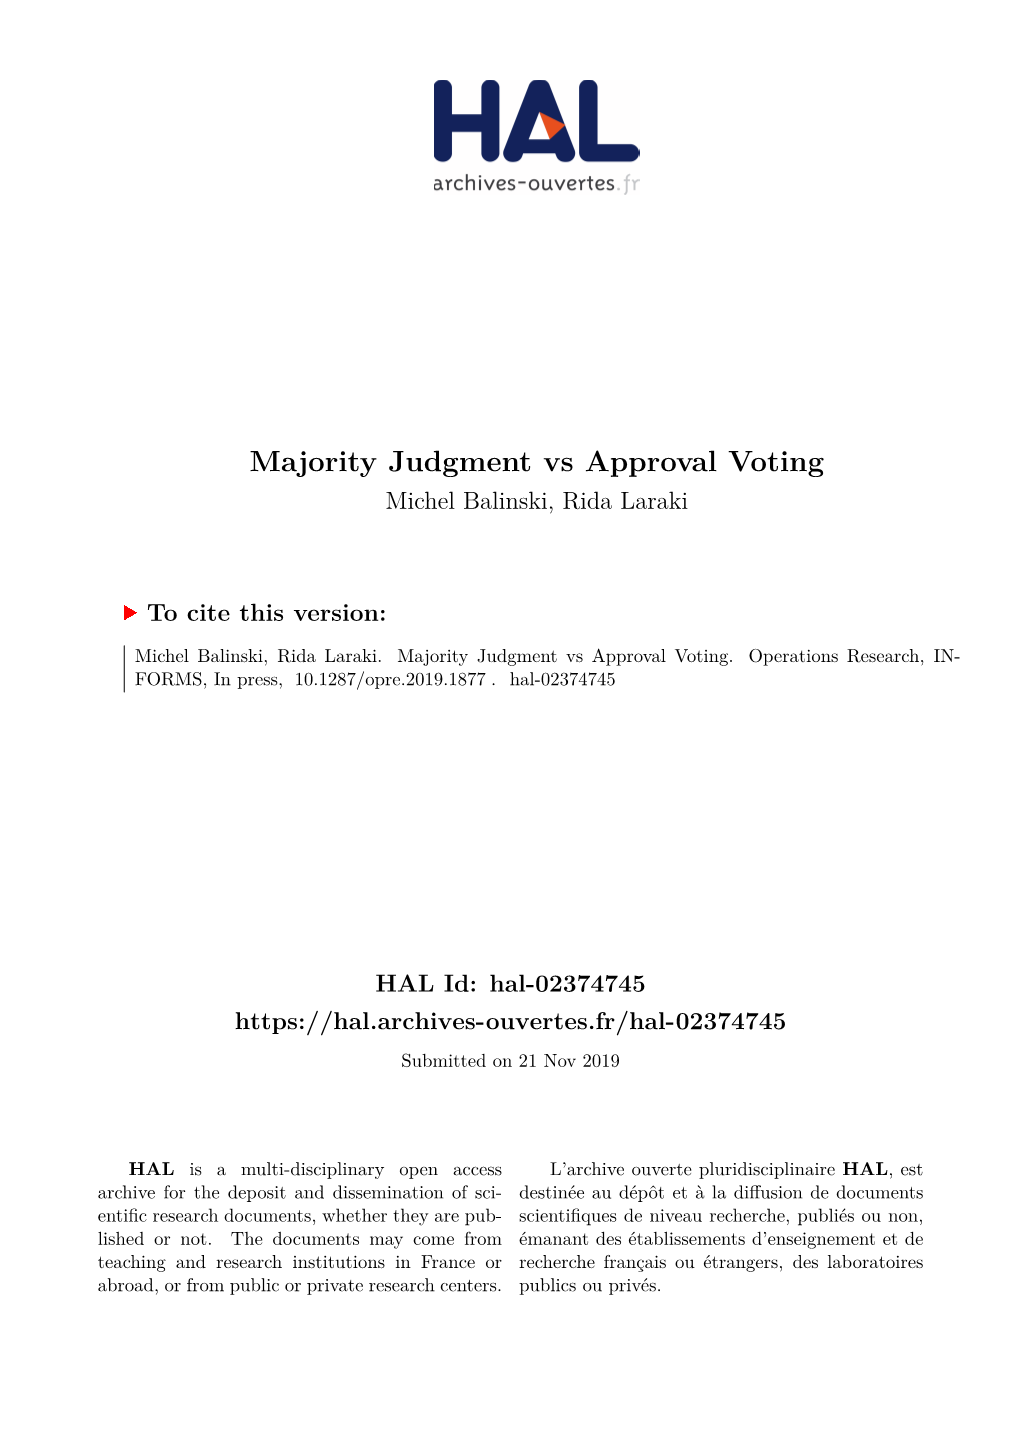 Majority Judgment Vs Approval Voting Michel Balinski, Rida Laraki